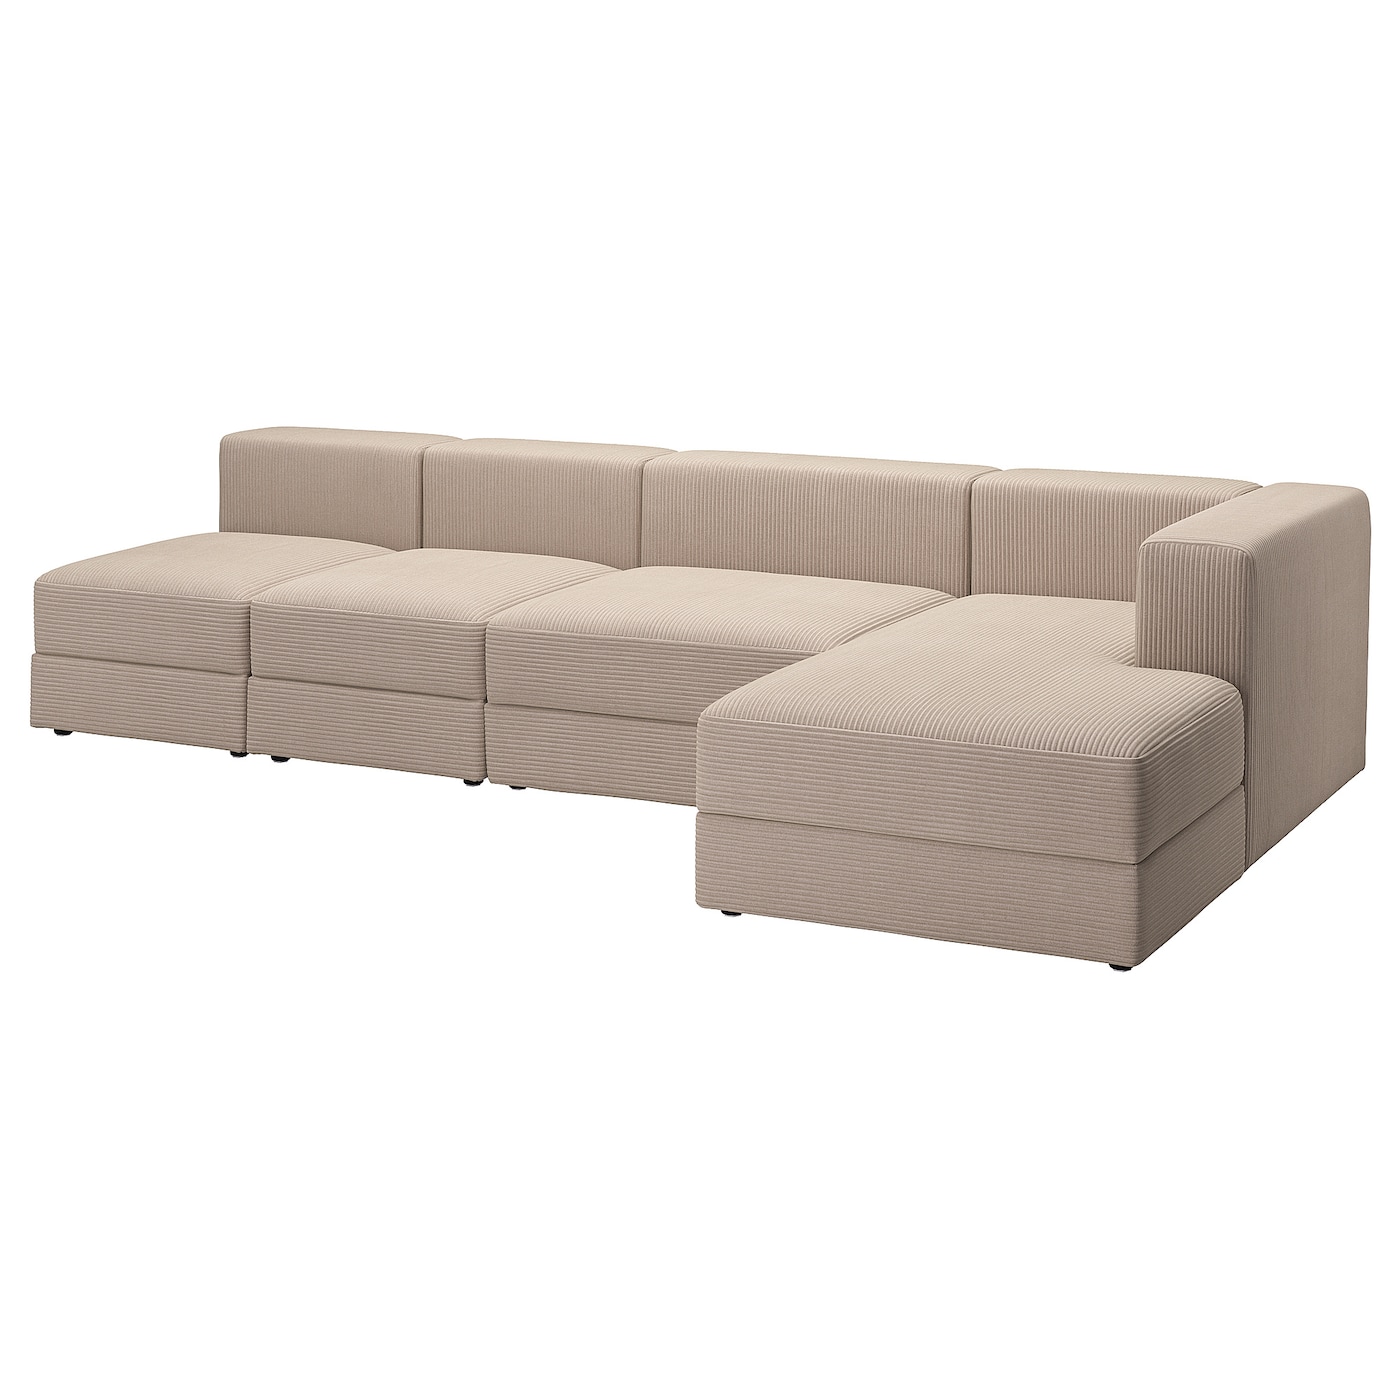 ДЖЭТТЕБО 5-местный диван + диван, правый/Самсала серый бежевый JÄTTEBO IKEA